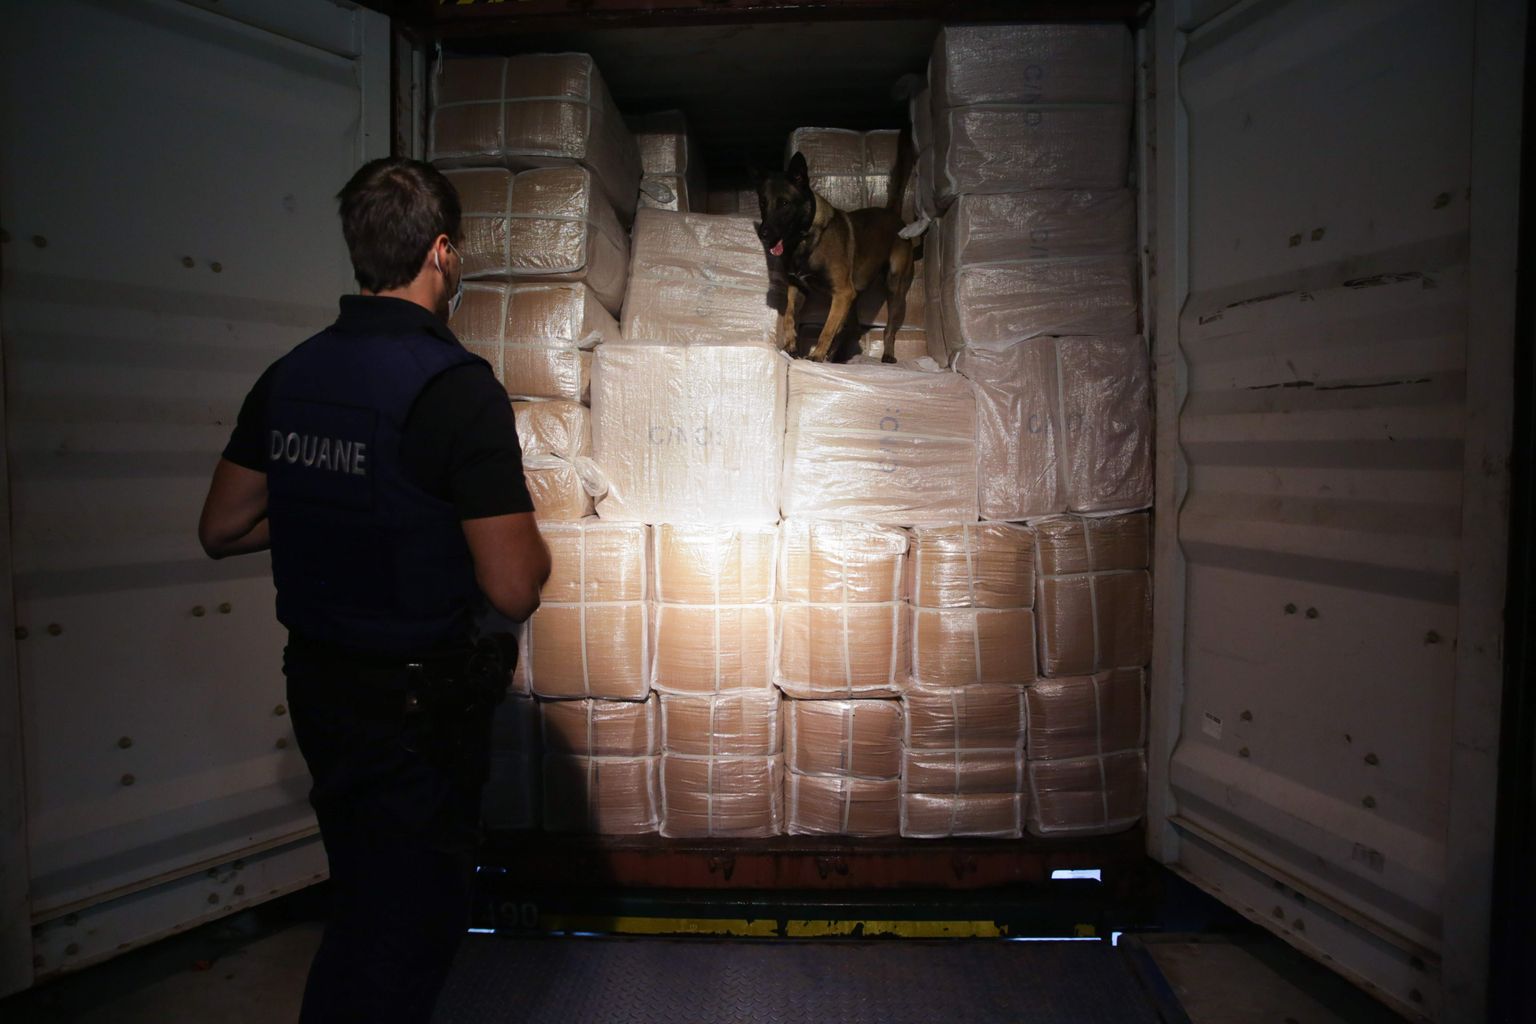 Antwerpeni tolliametnikke abistavad kauba ülevaatamisel politseikoerad, keda treenitakse narkootikume tuvastama.